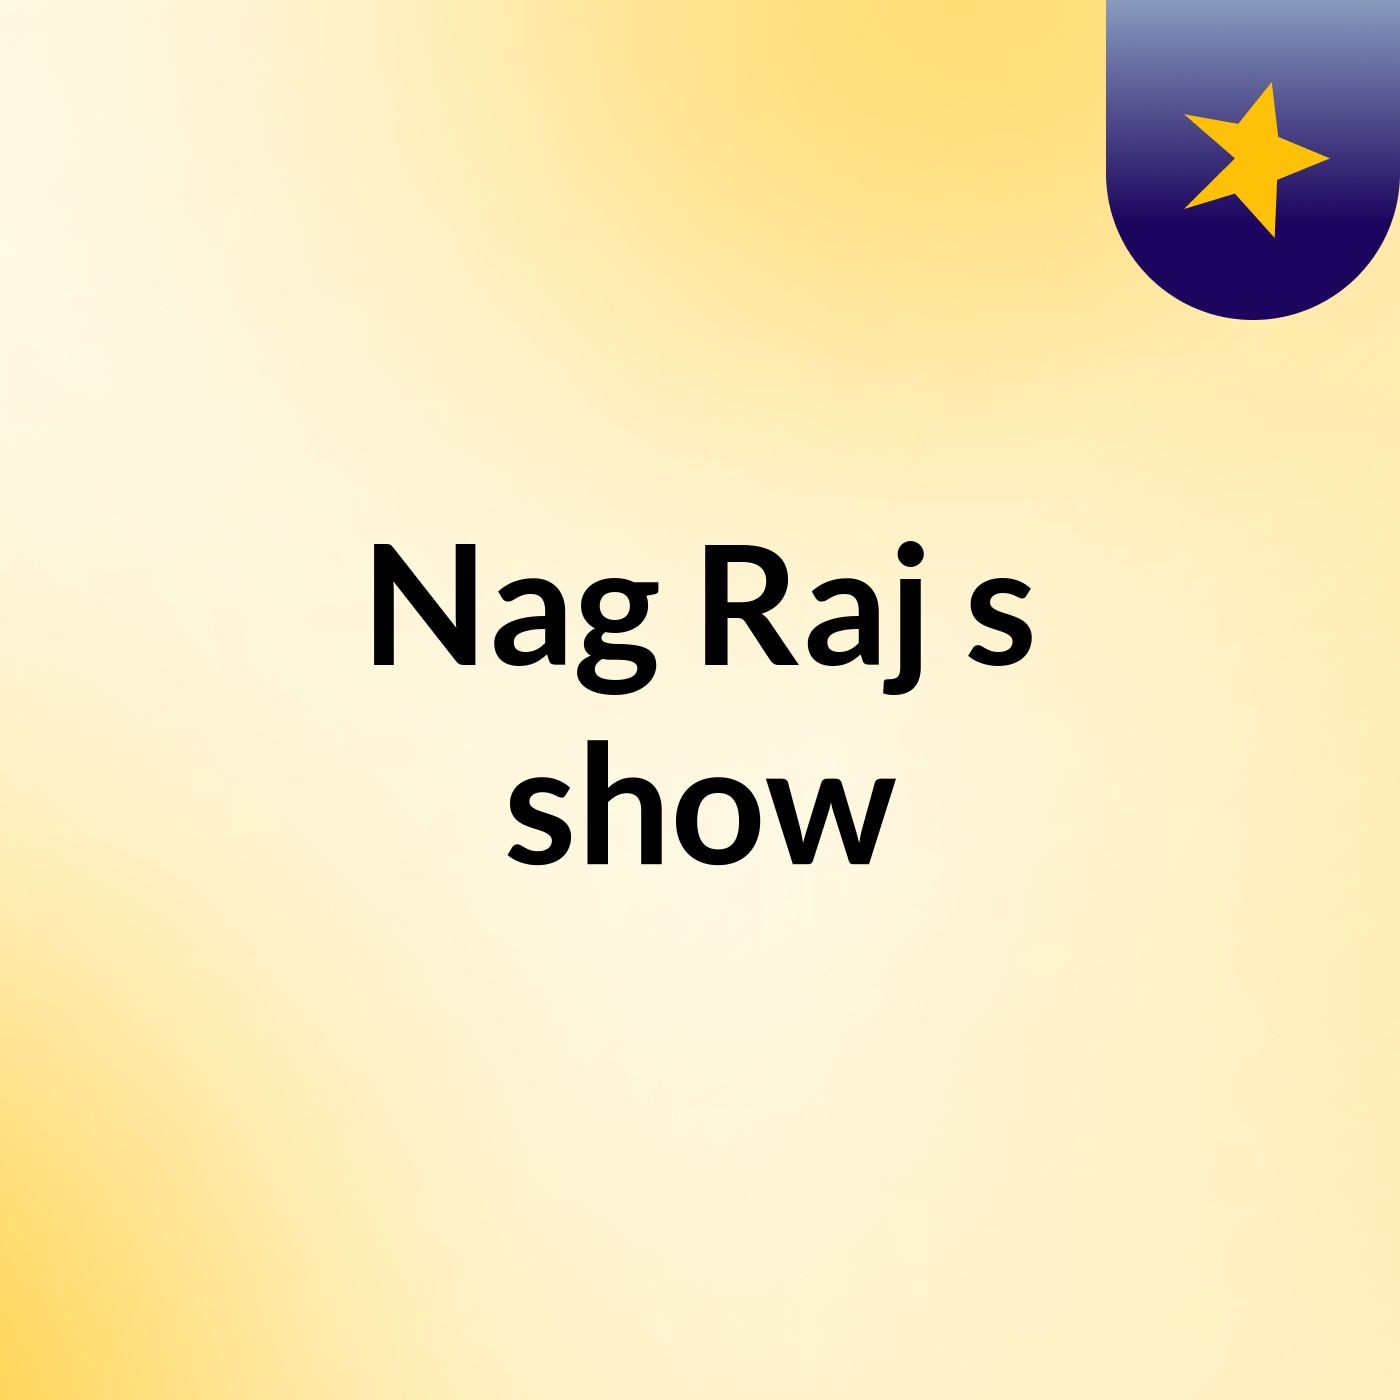 Nag Raj's show